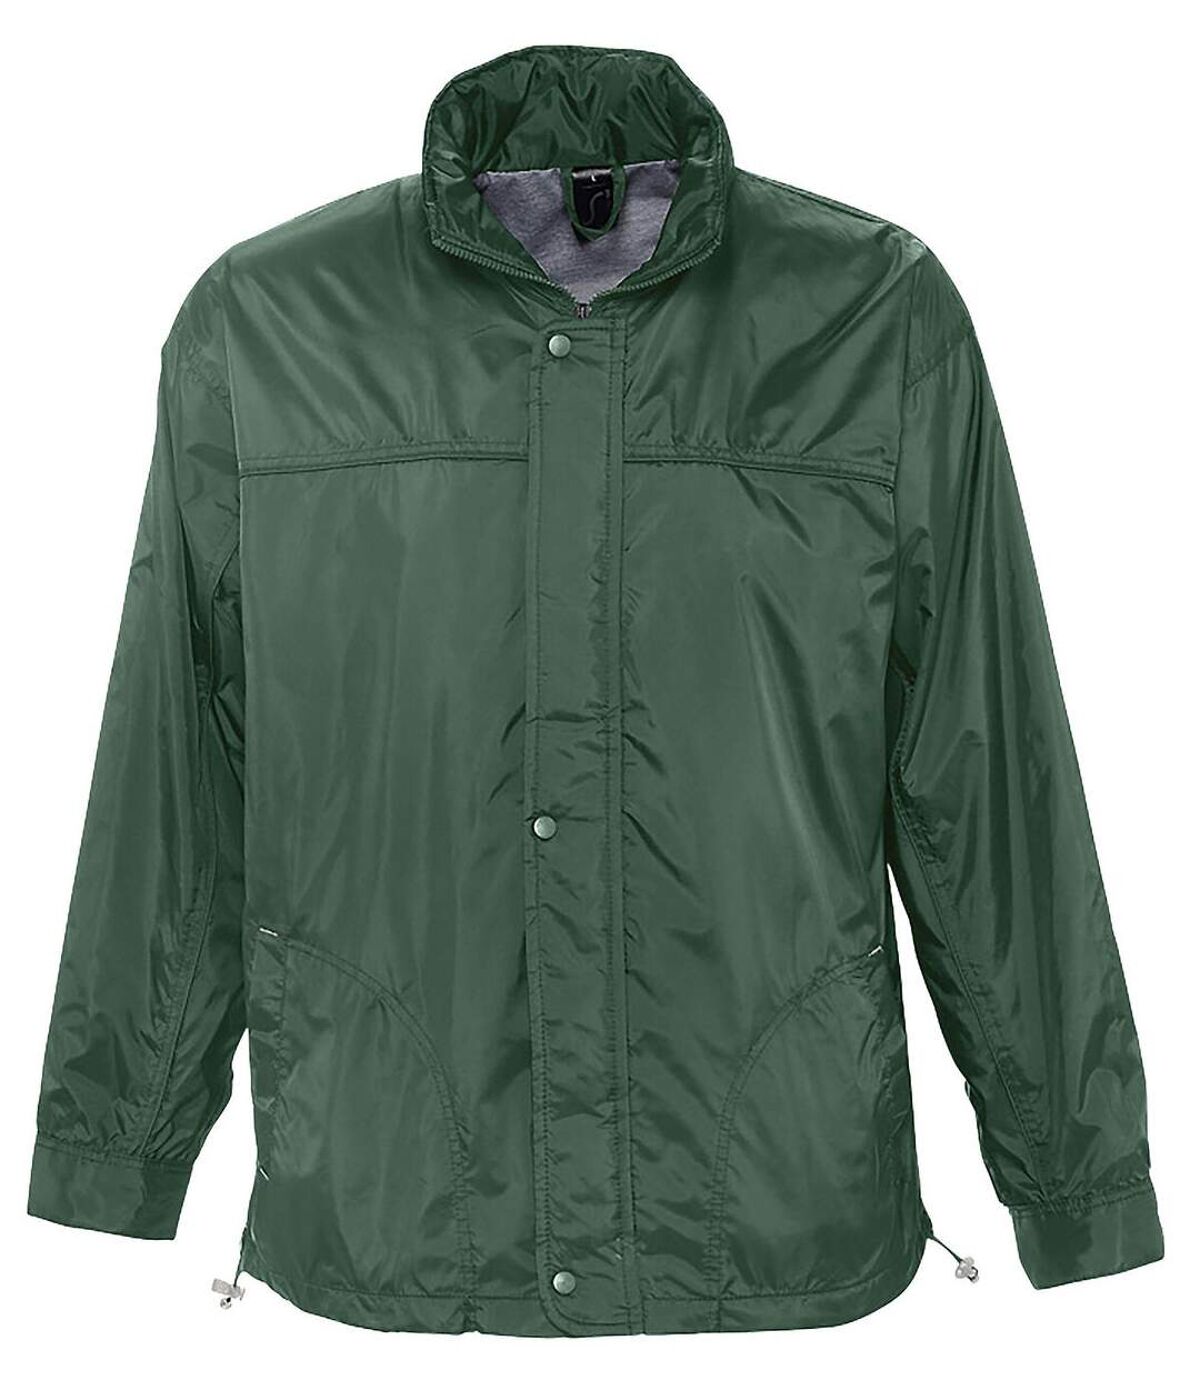 Veste coupe-vent imperméable doublé jersey - 46000 - vert forêt - mixte homme femme